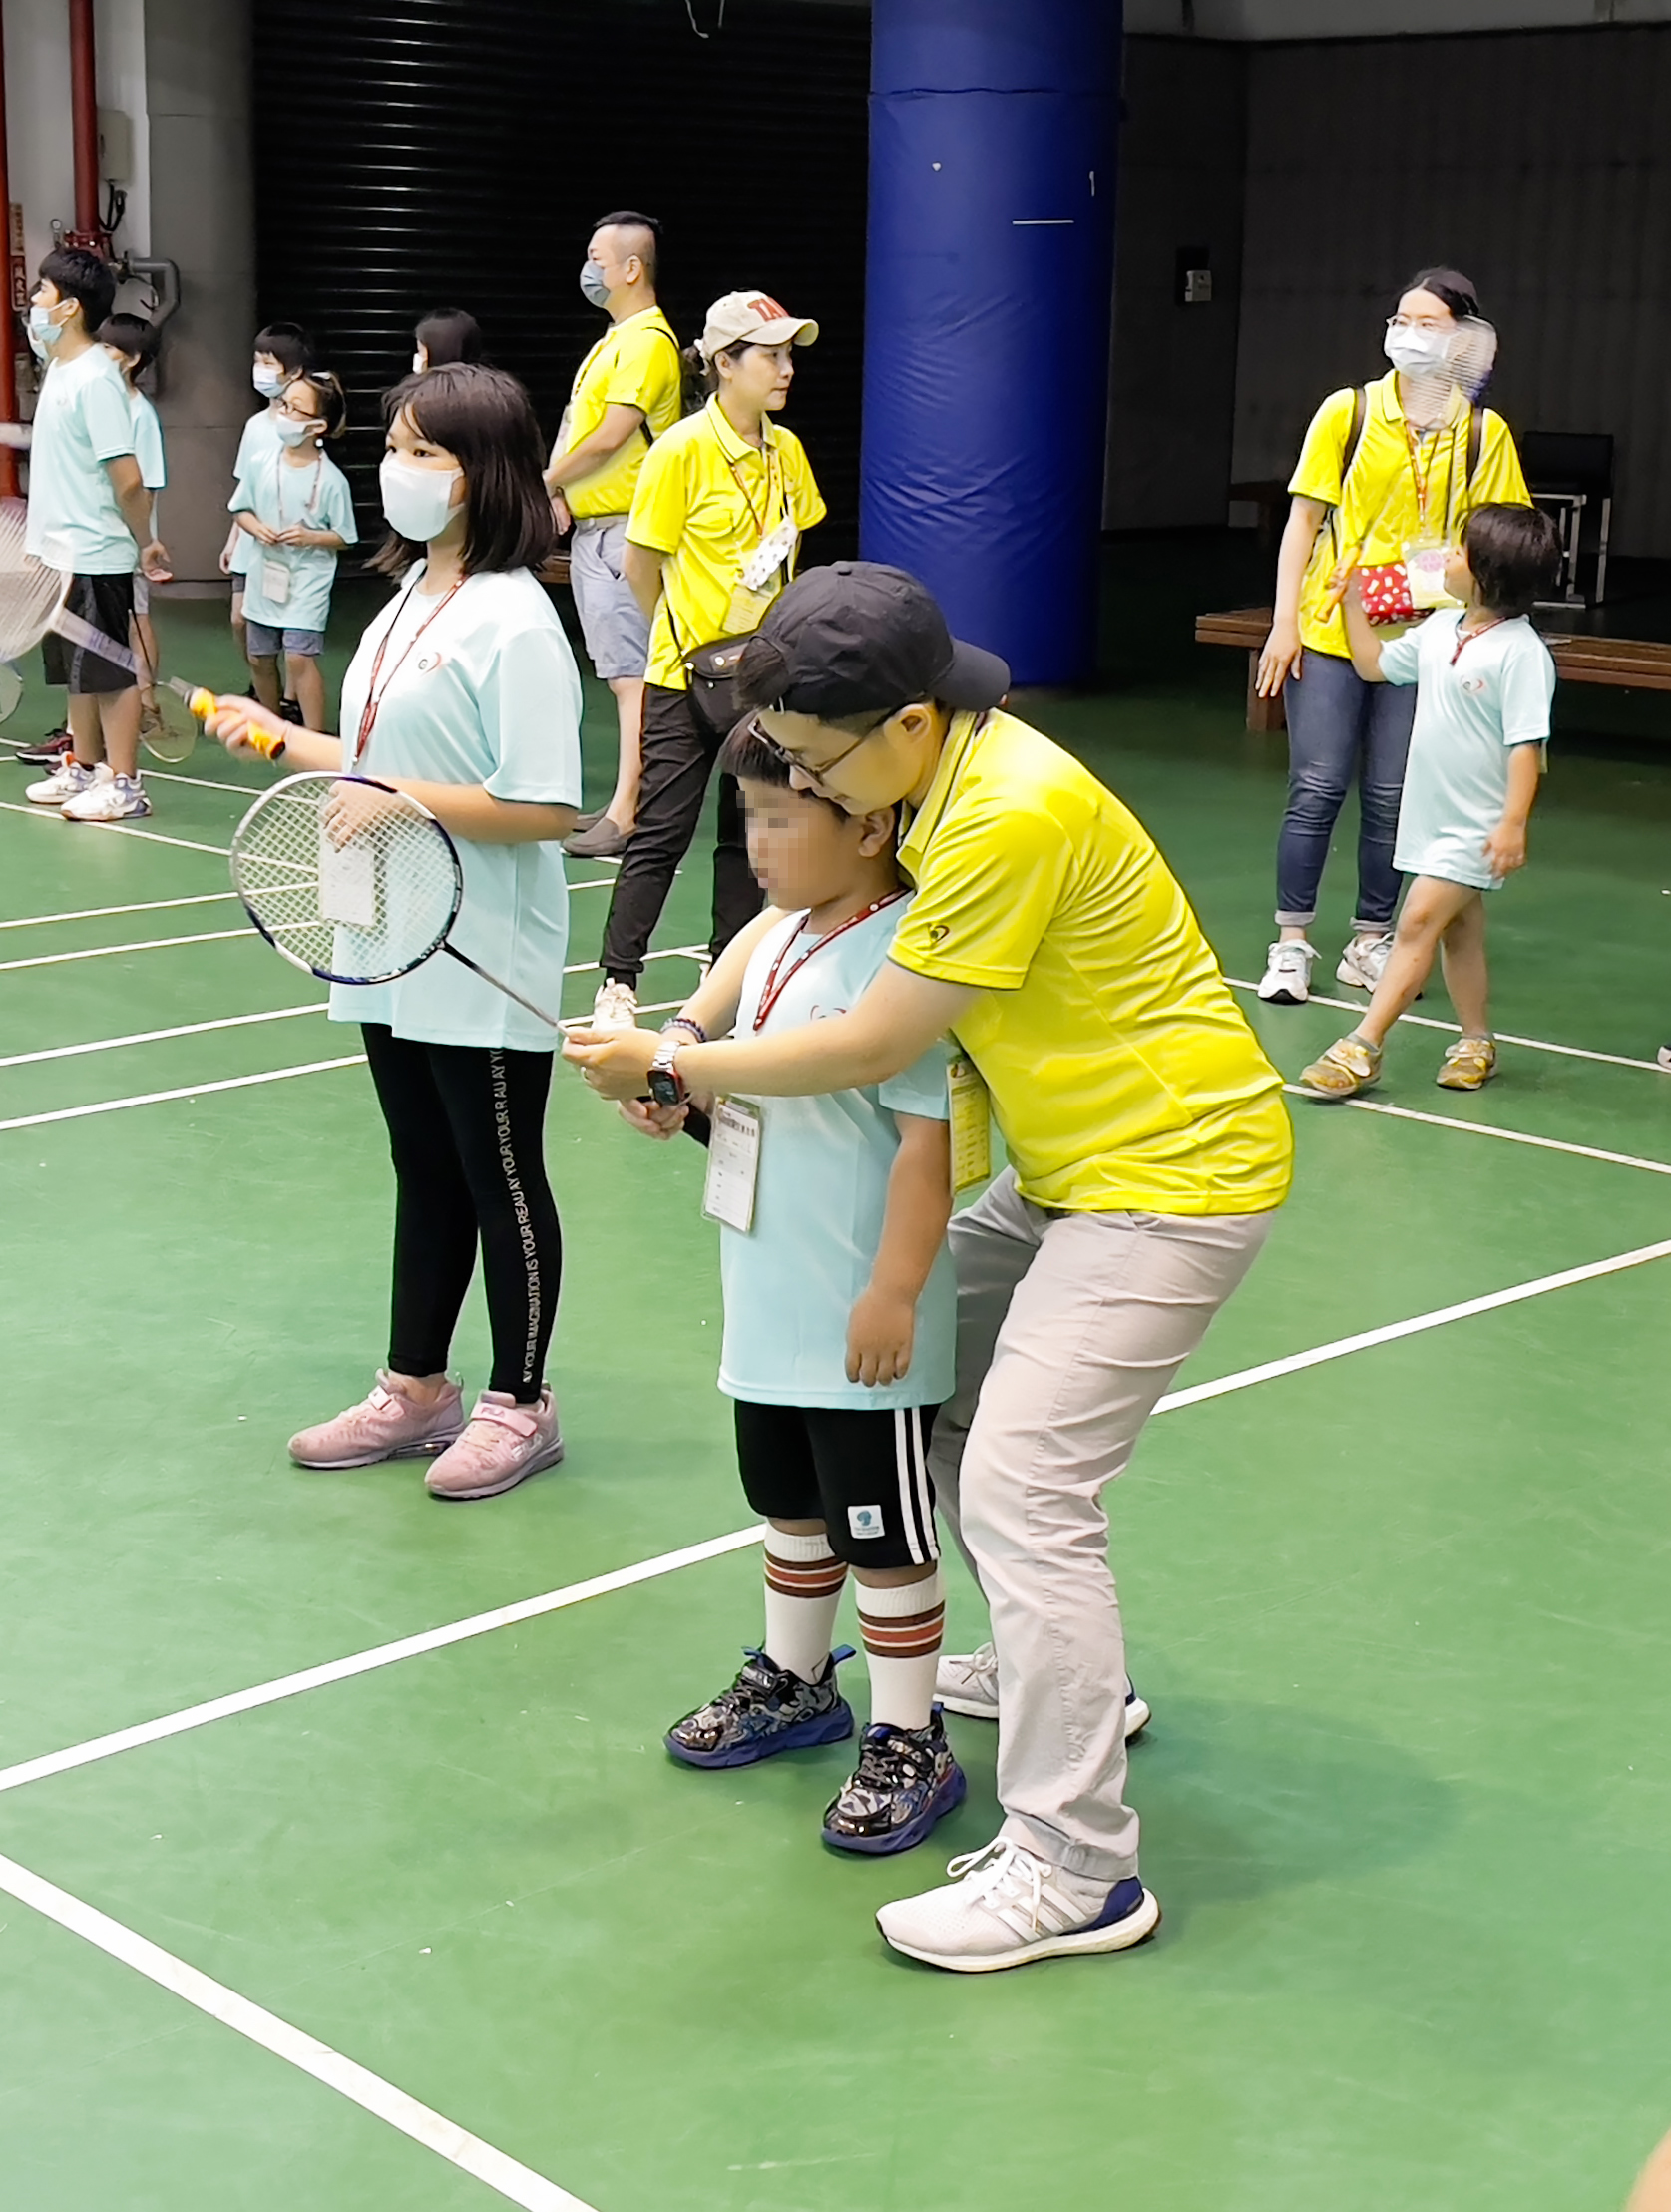 永達志工用愛心和耐心陪伴弱勢孩童練習羽球。